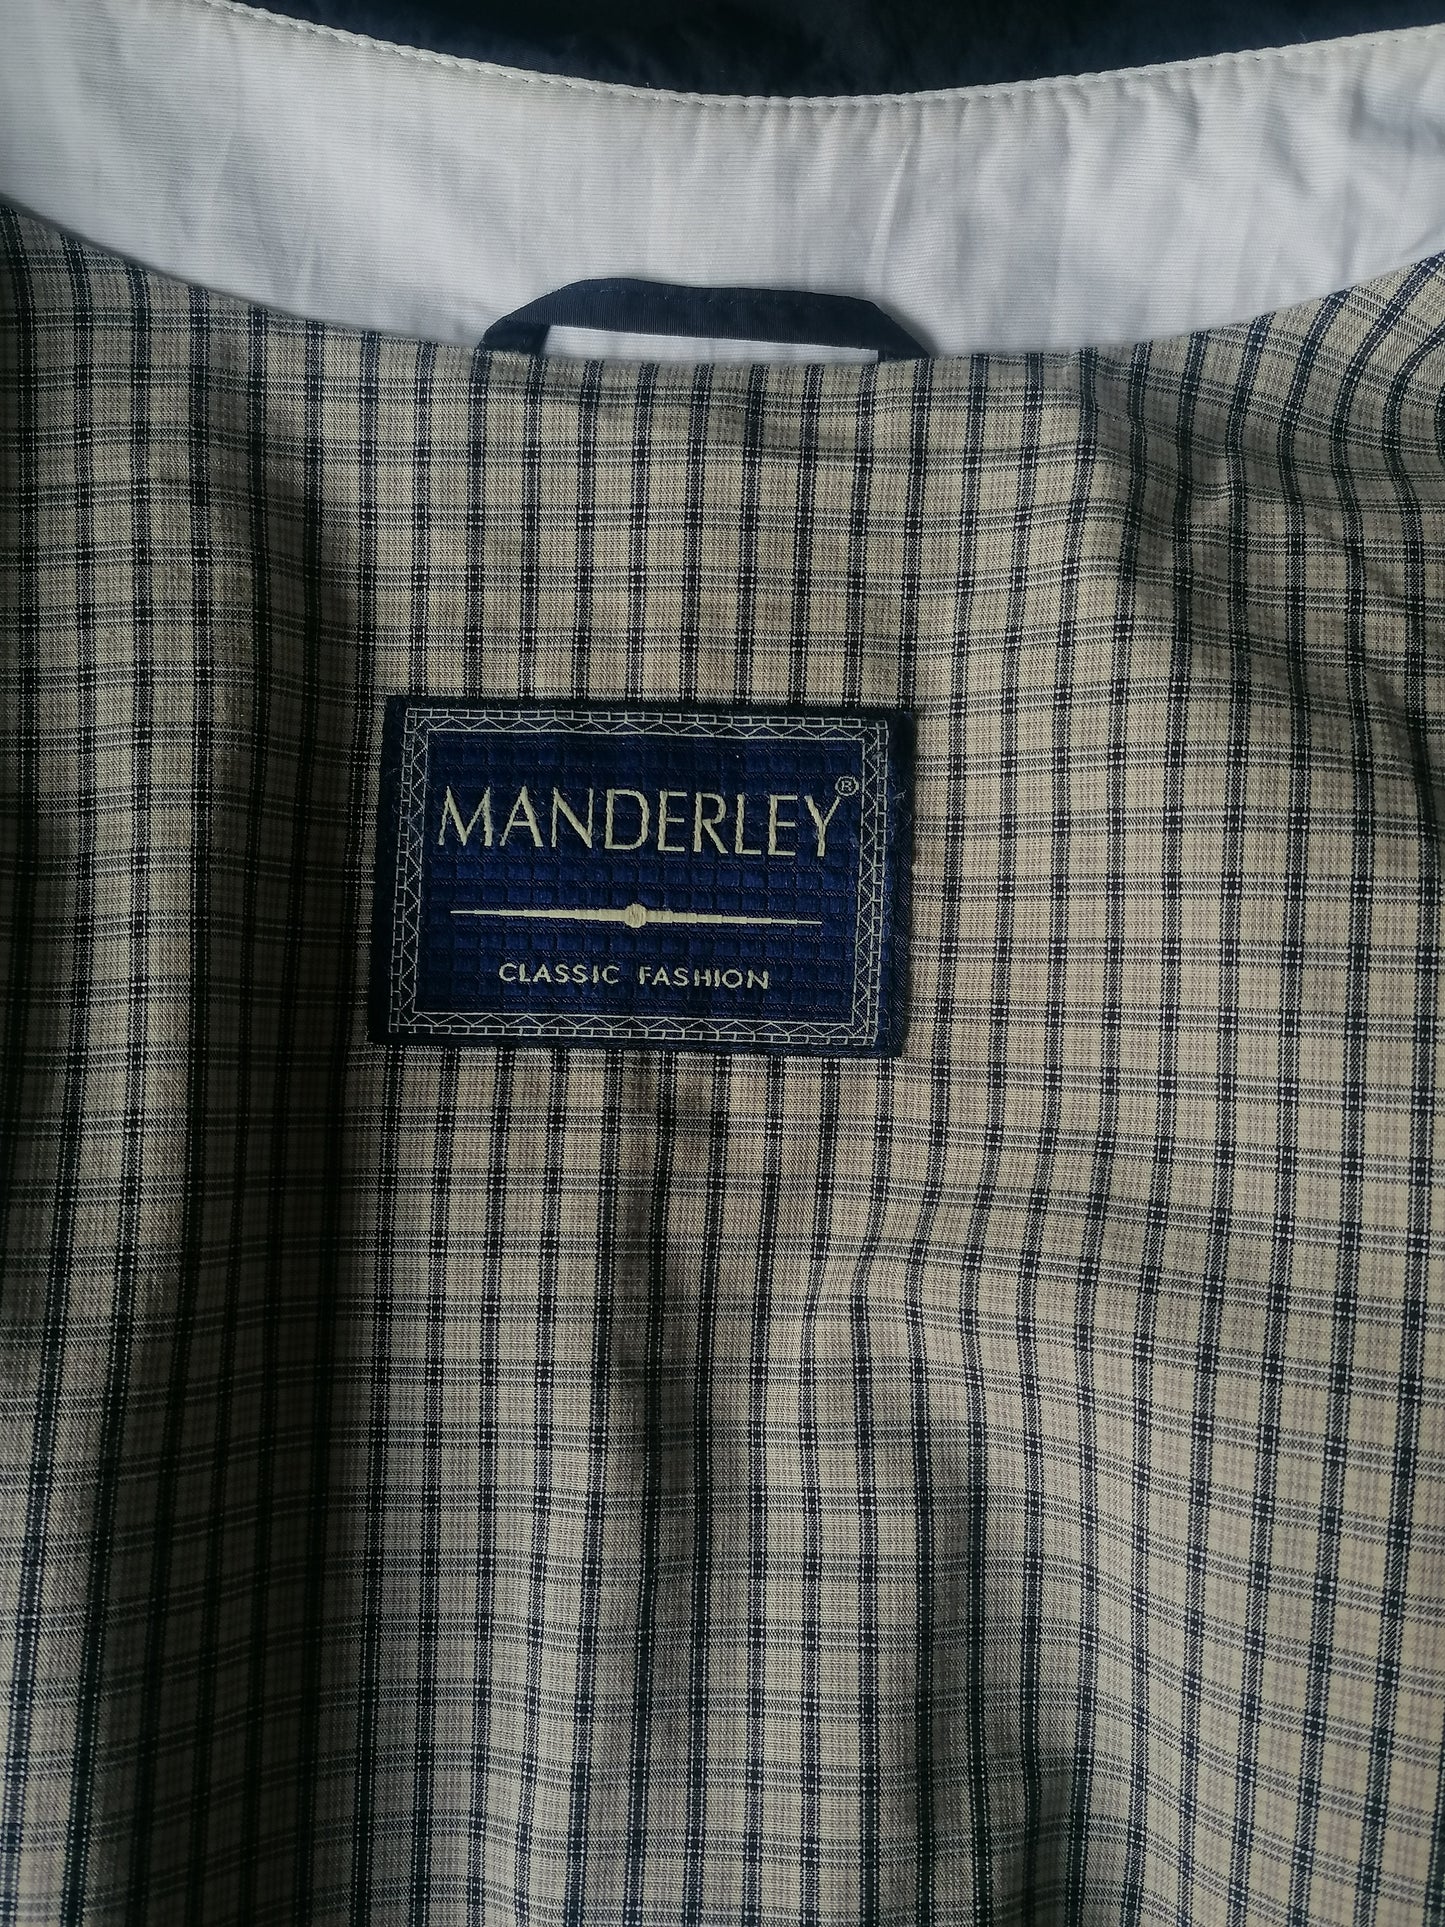 Manderley Mantel / Giacca a metà lunghezza. Colorato blu scuro. Taglia 98 / XL. (58/60)